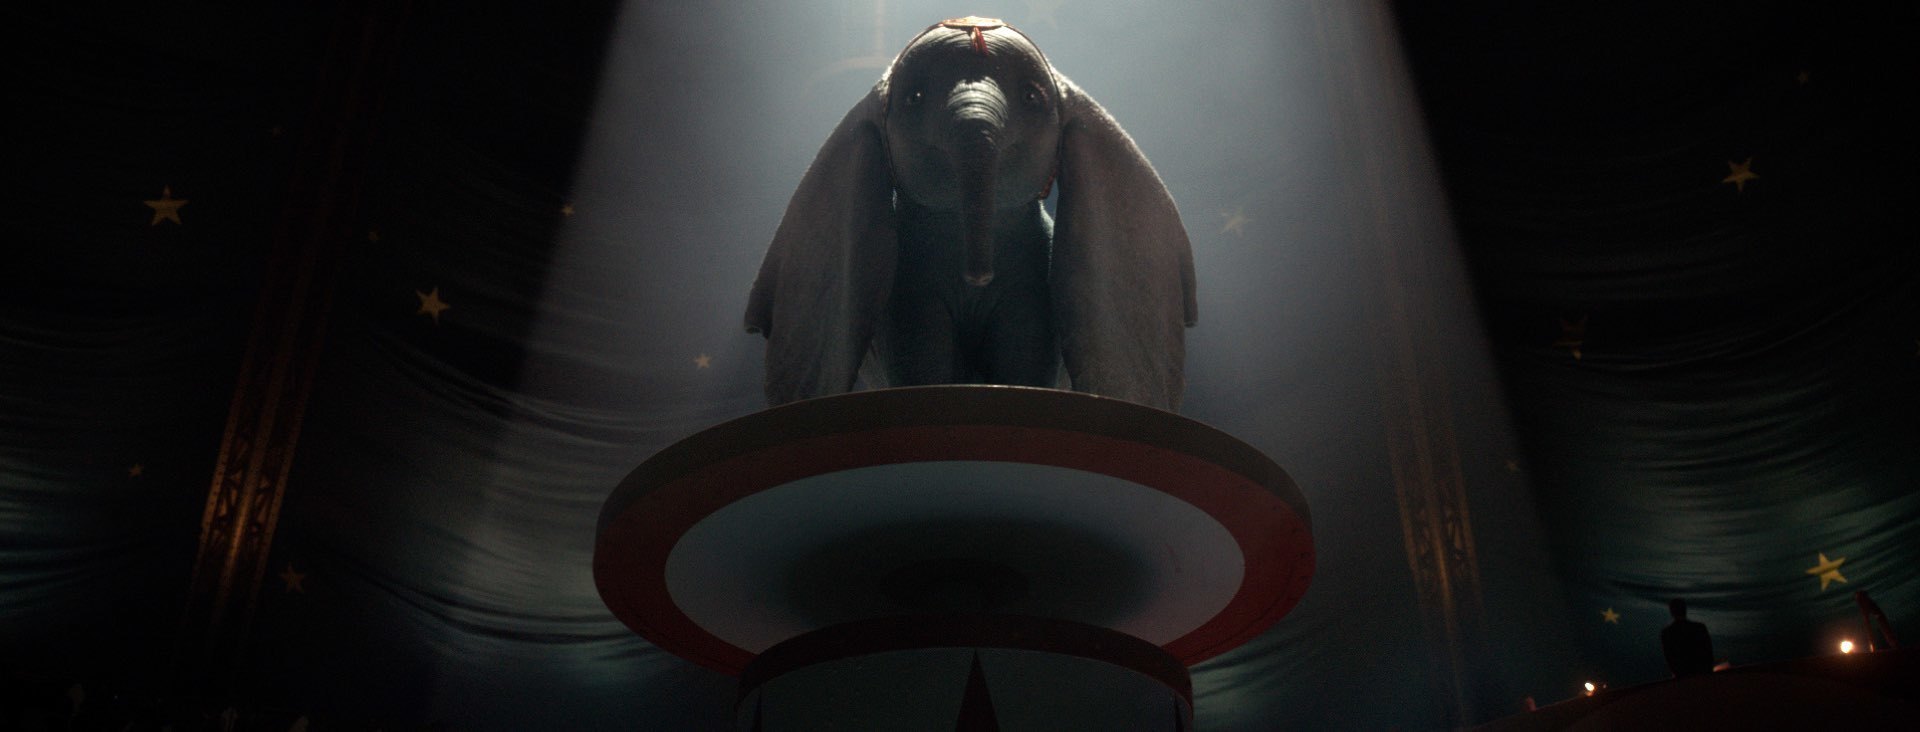 Dumbo’nun Ardında Yatan Hikaye